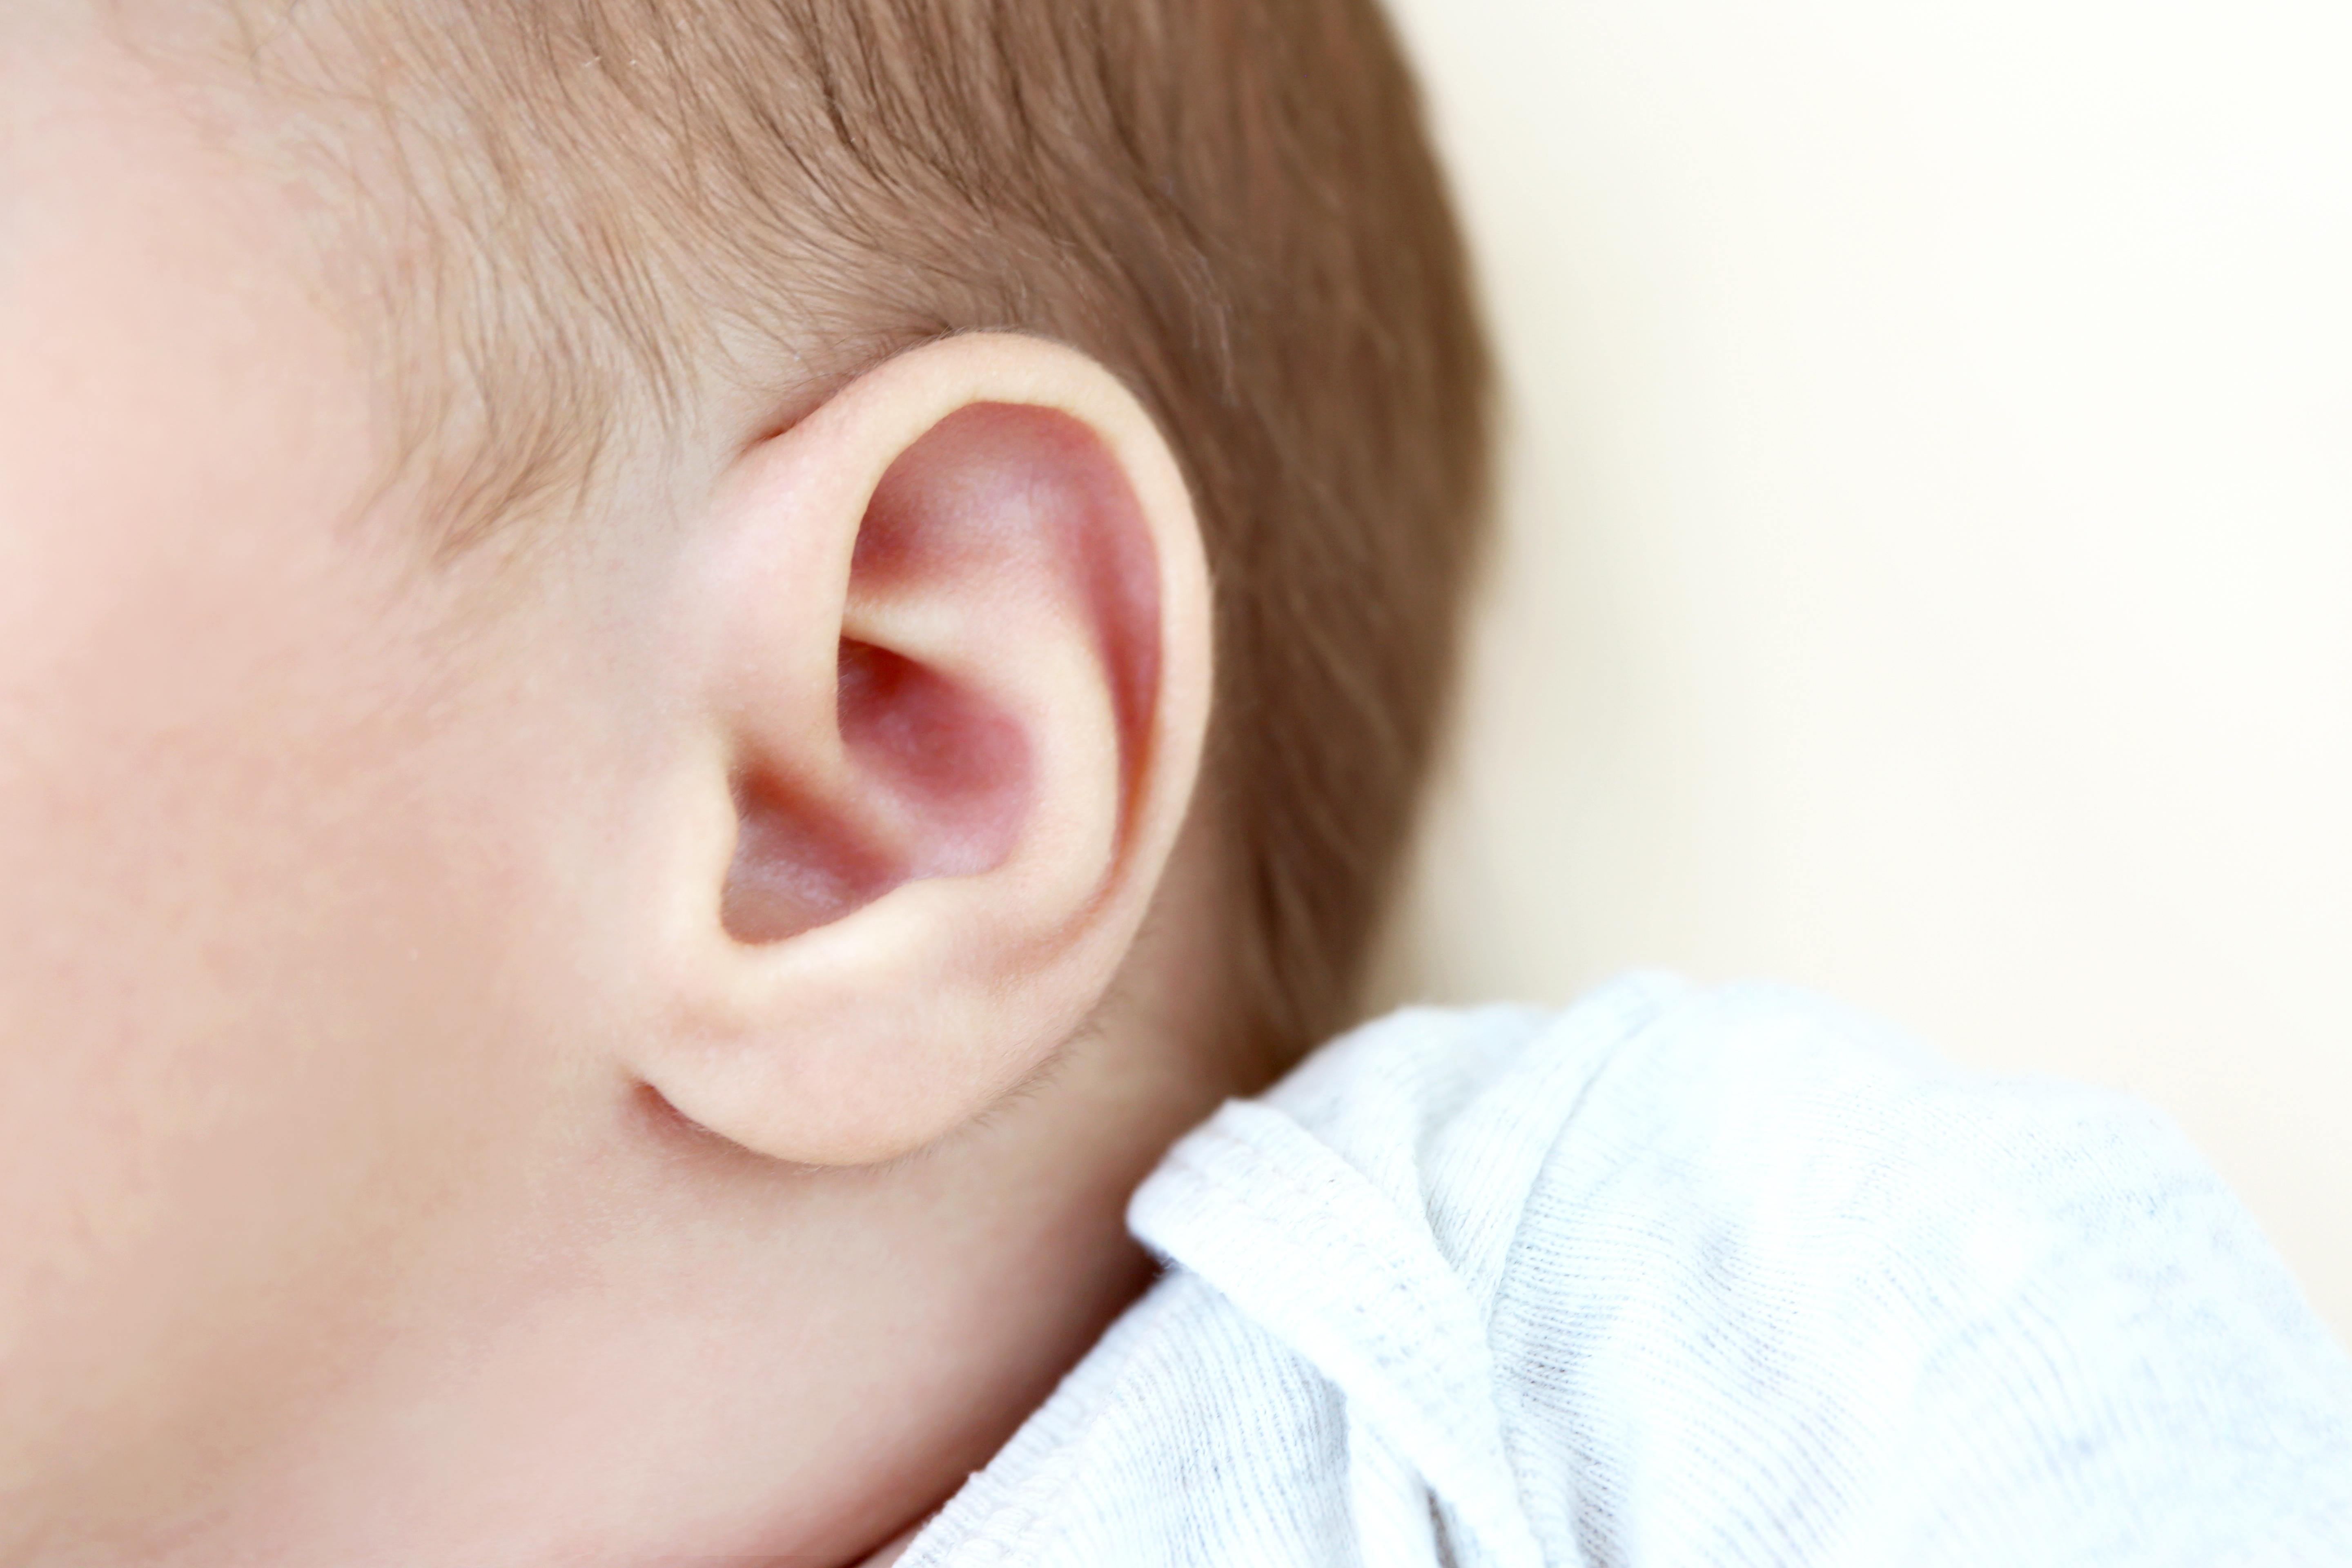 宝宝耳朵后的小包图片,耳朵后骨头凸起癌图片 - 伤感说说吧